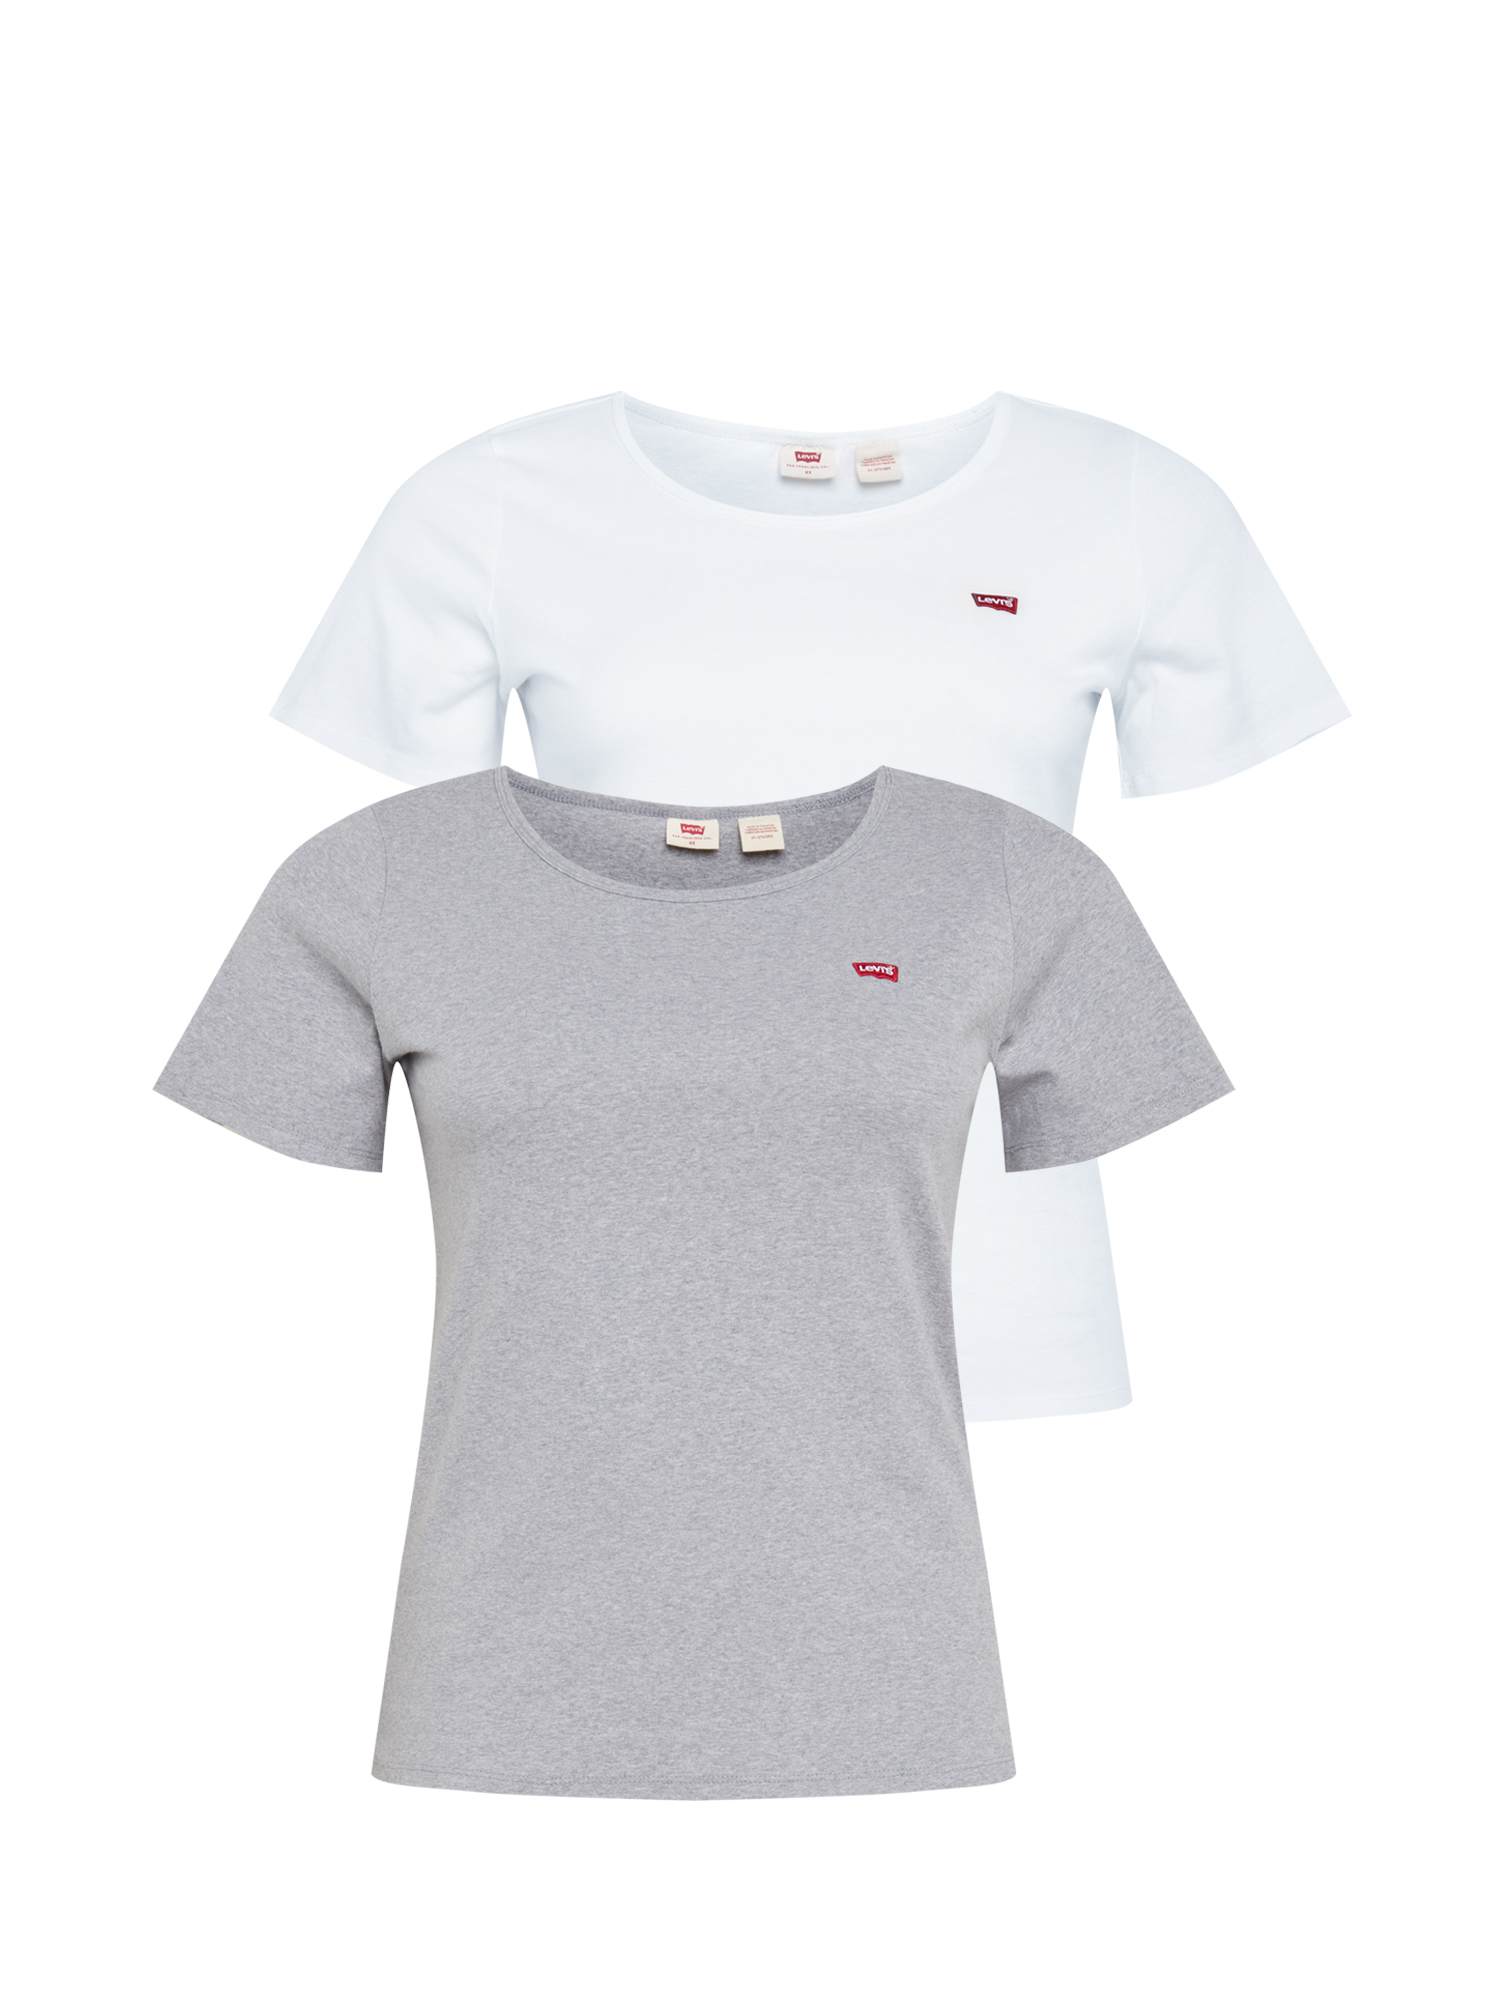 Kobiety Sruib Levis® Plus Koszulka w kolorze Biały, Szarym 